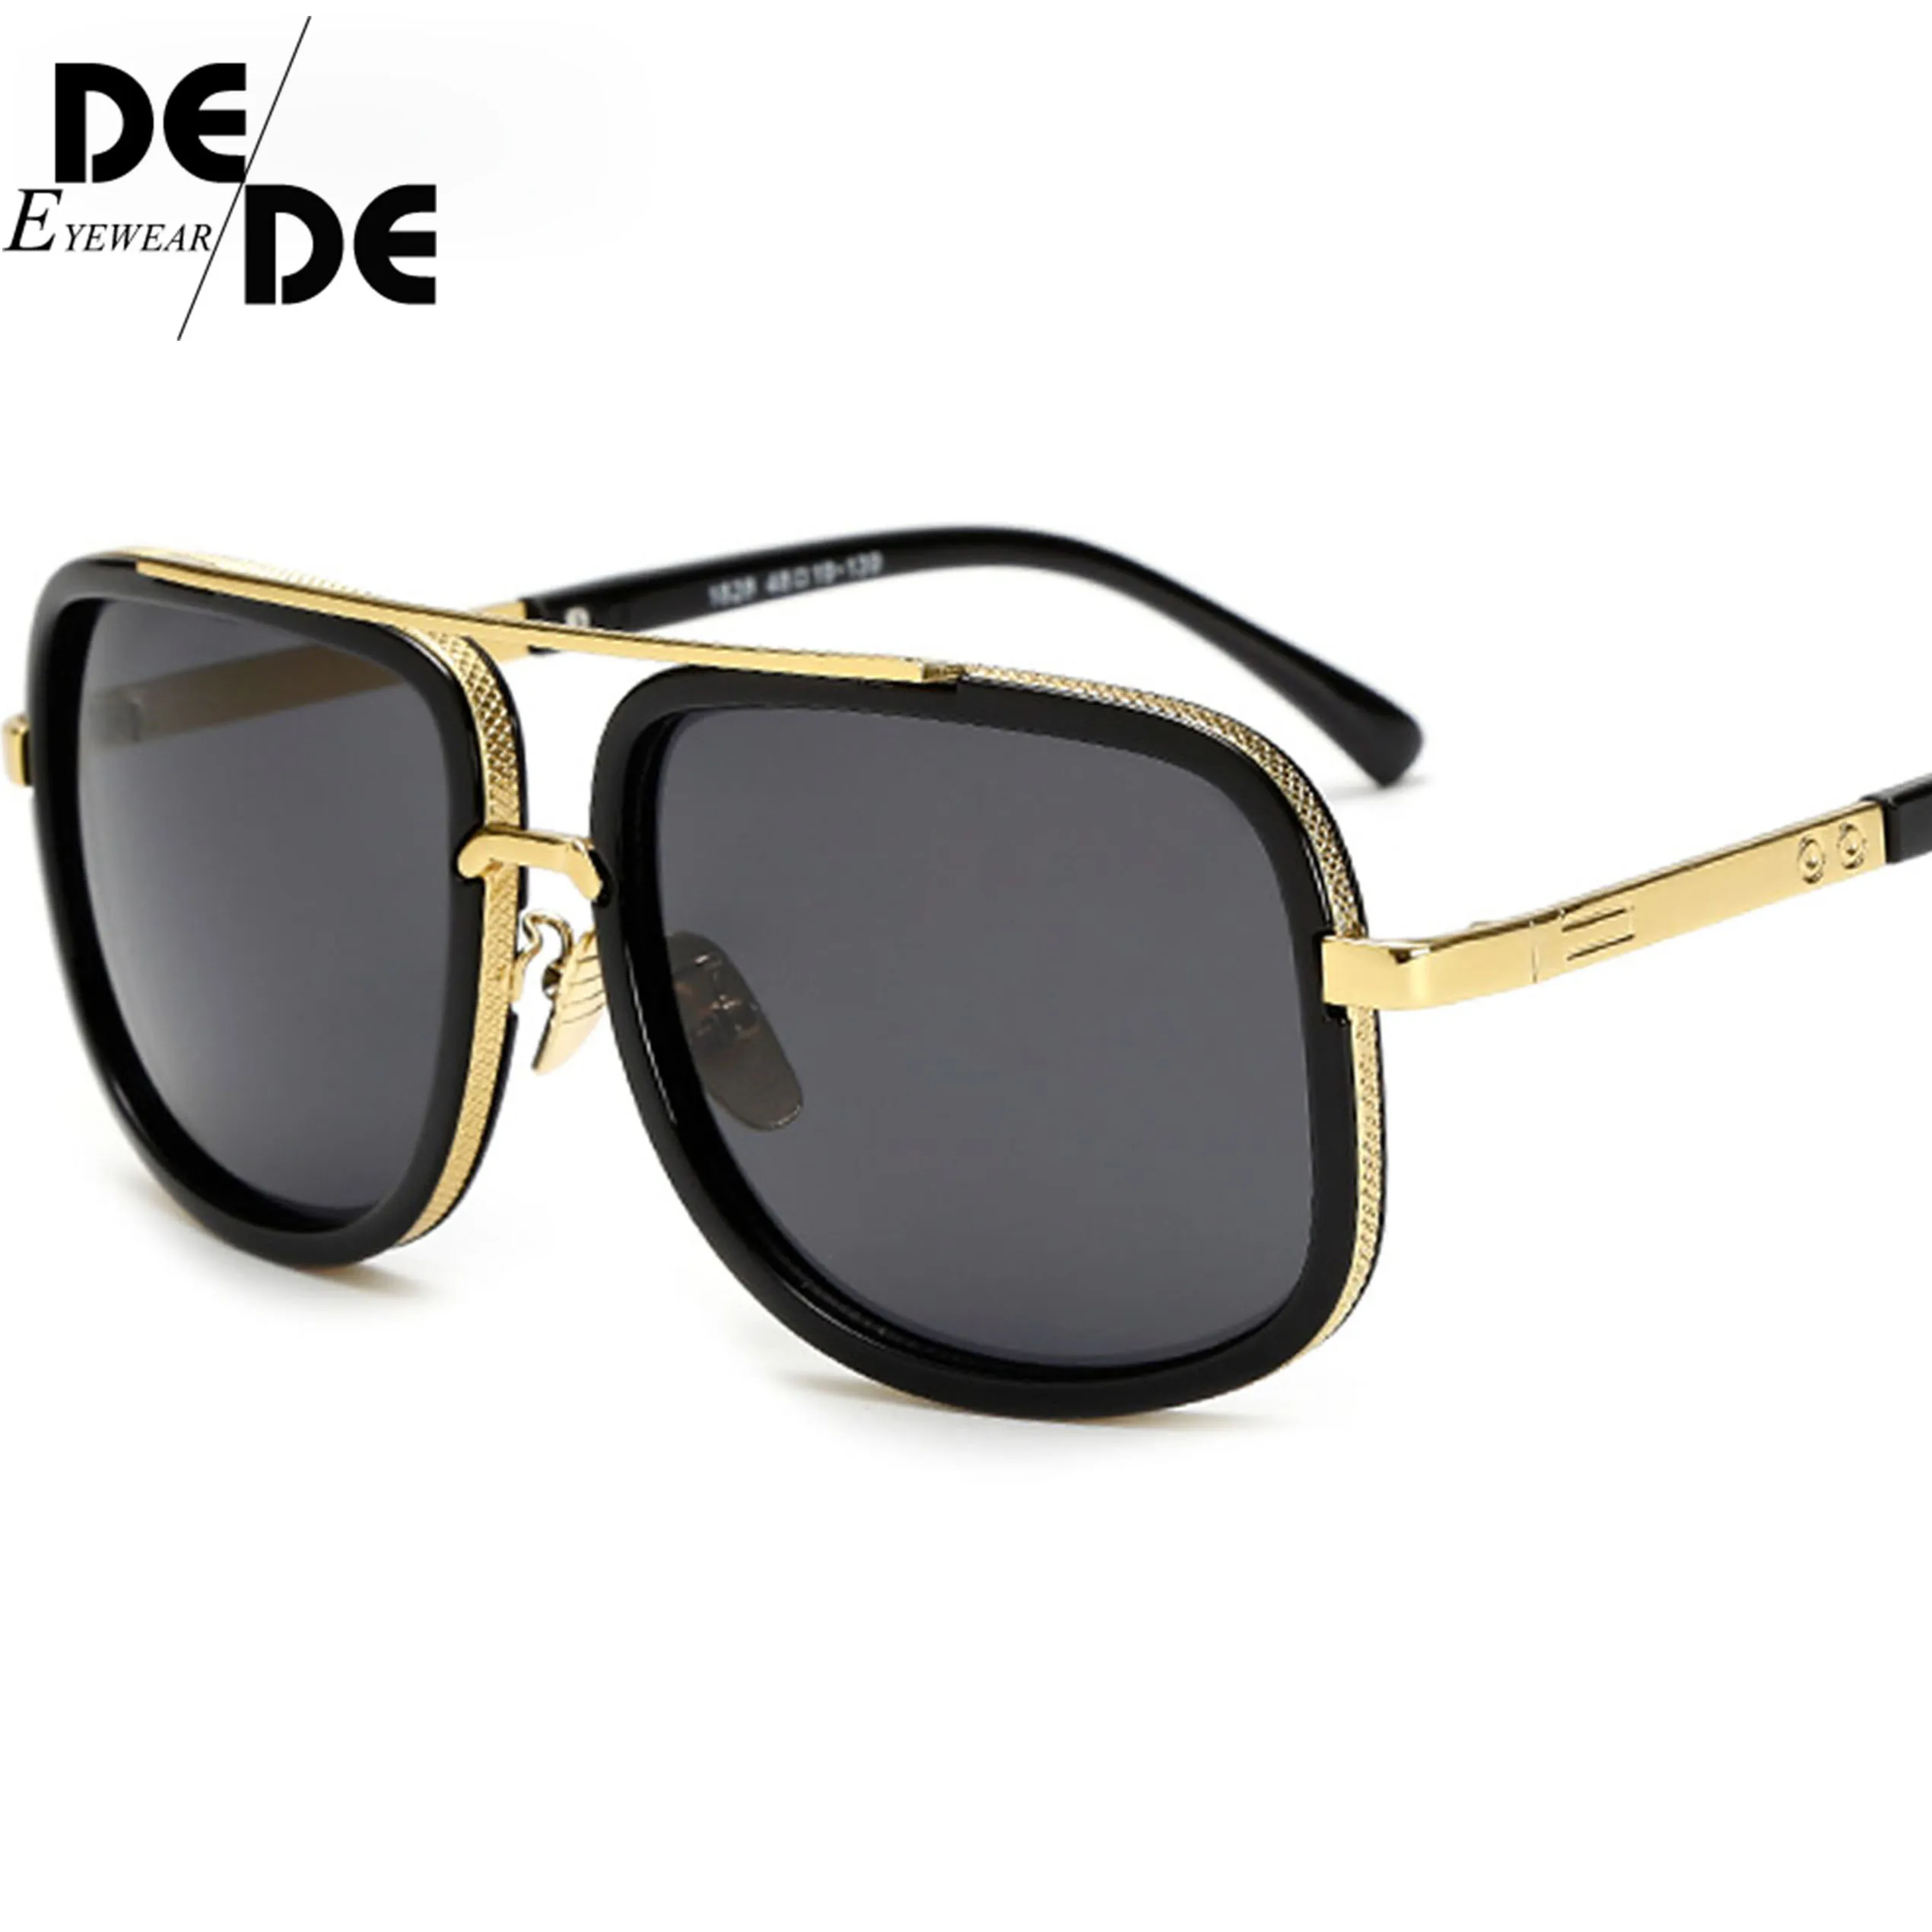 

New Style 2019 Sunglasses Men Brand Designer Sun Glasses Driving Oculos De Sol Masculino Grandmaster Square Sunglass